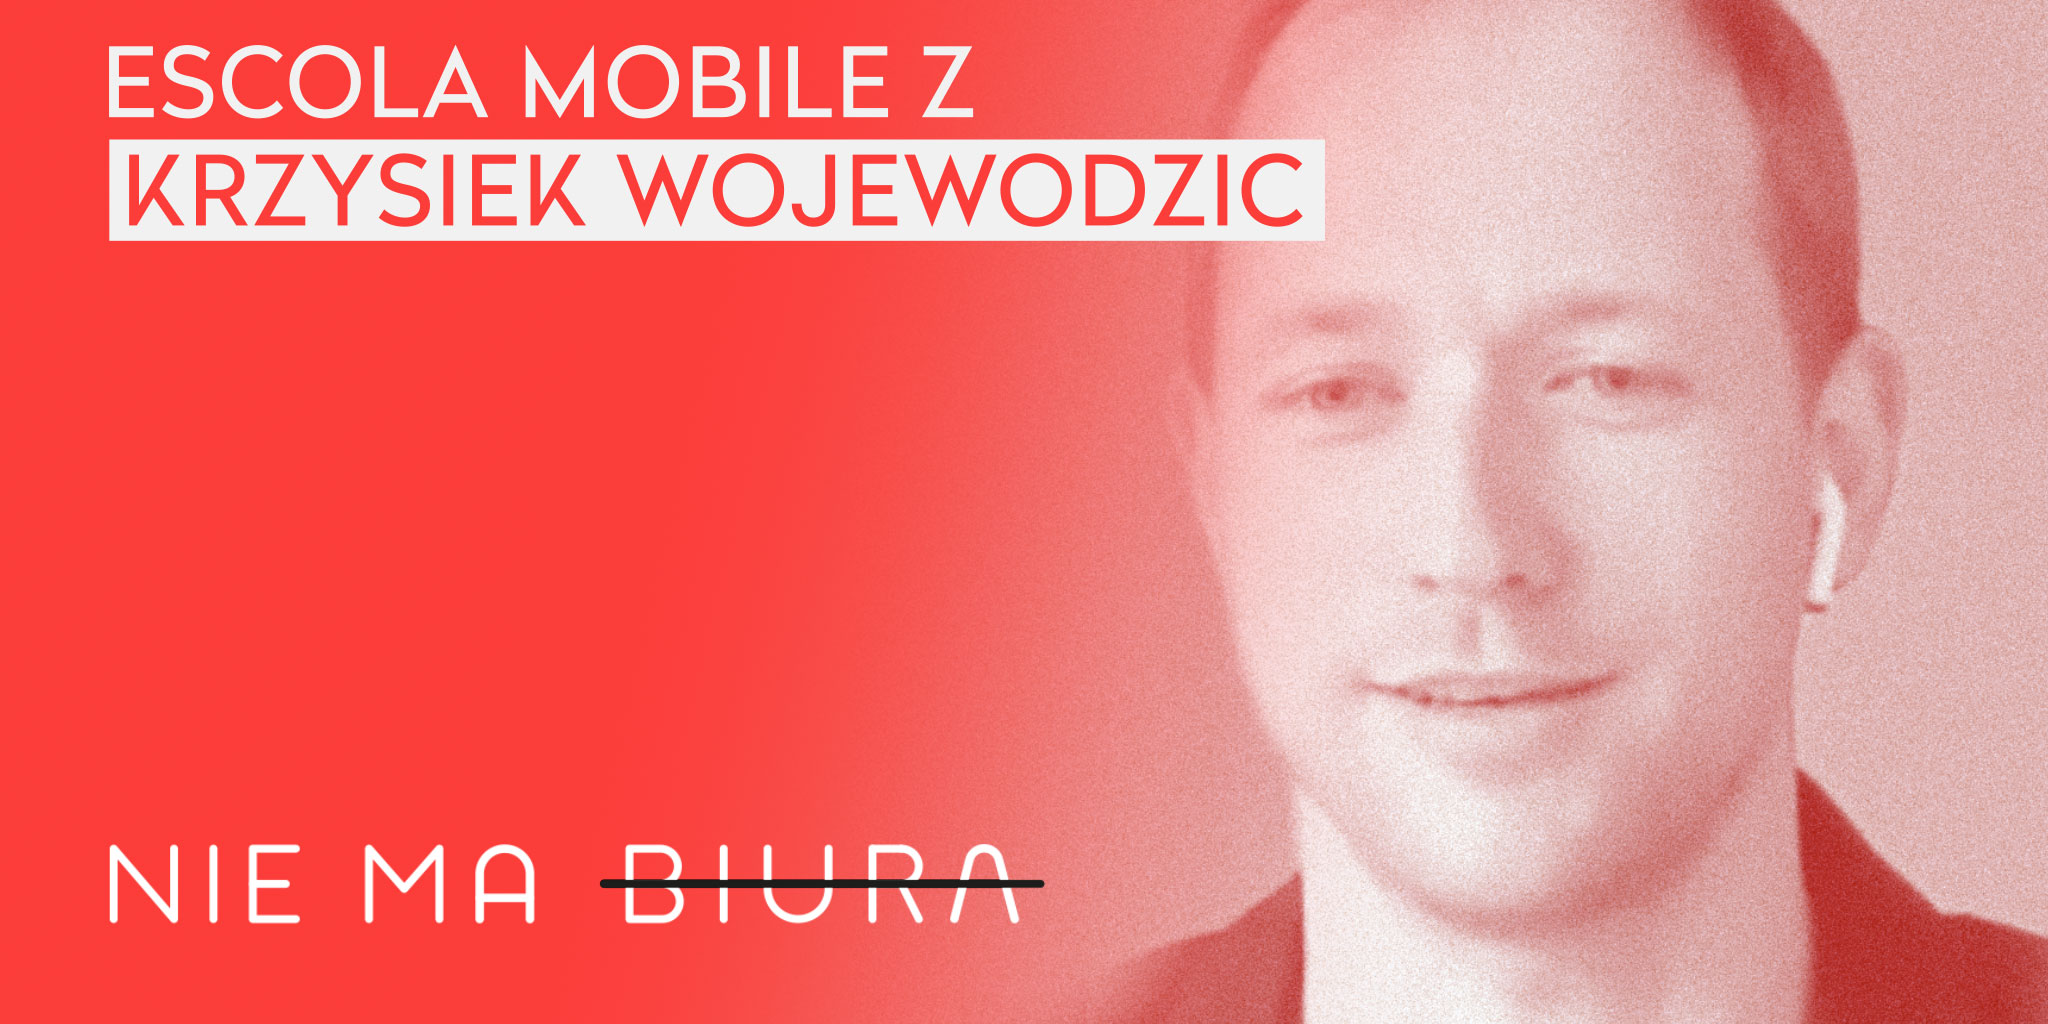 Nie Ma Biura 7 - wywiad u Krzysztofa Wojewodzica z Escola Mobile - praca zdalna, zarządzanie zespołem.